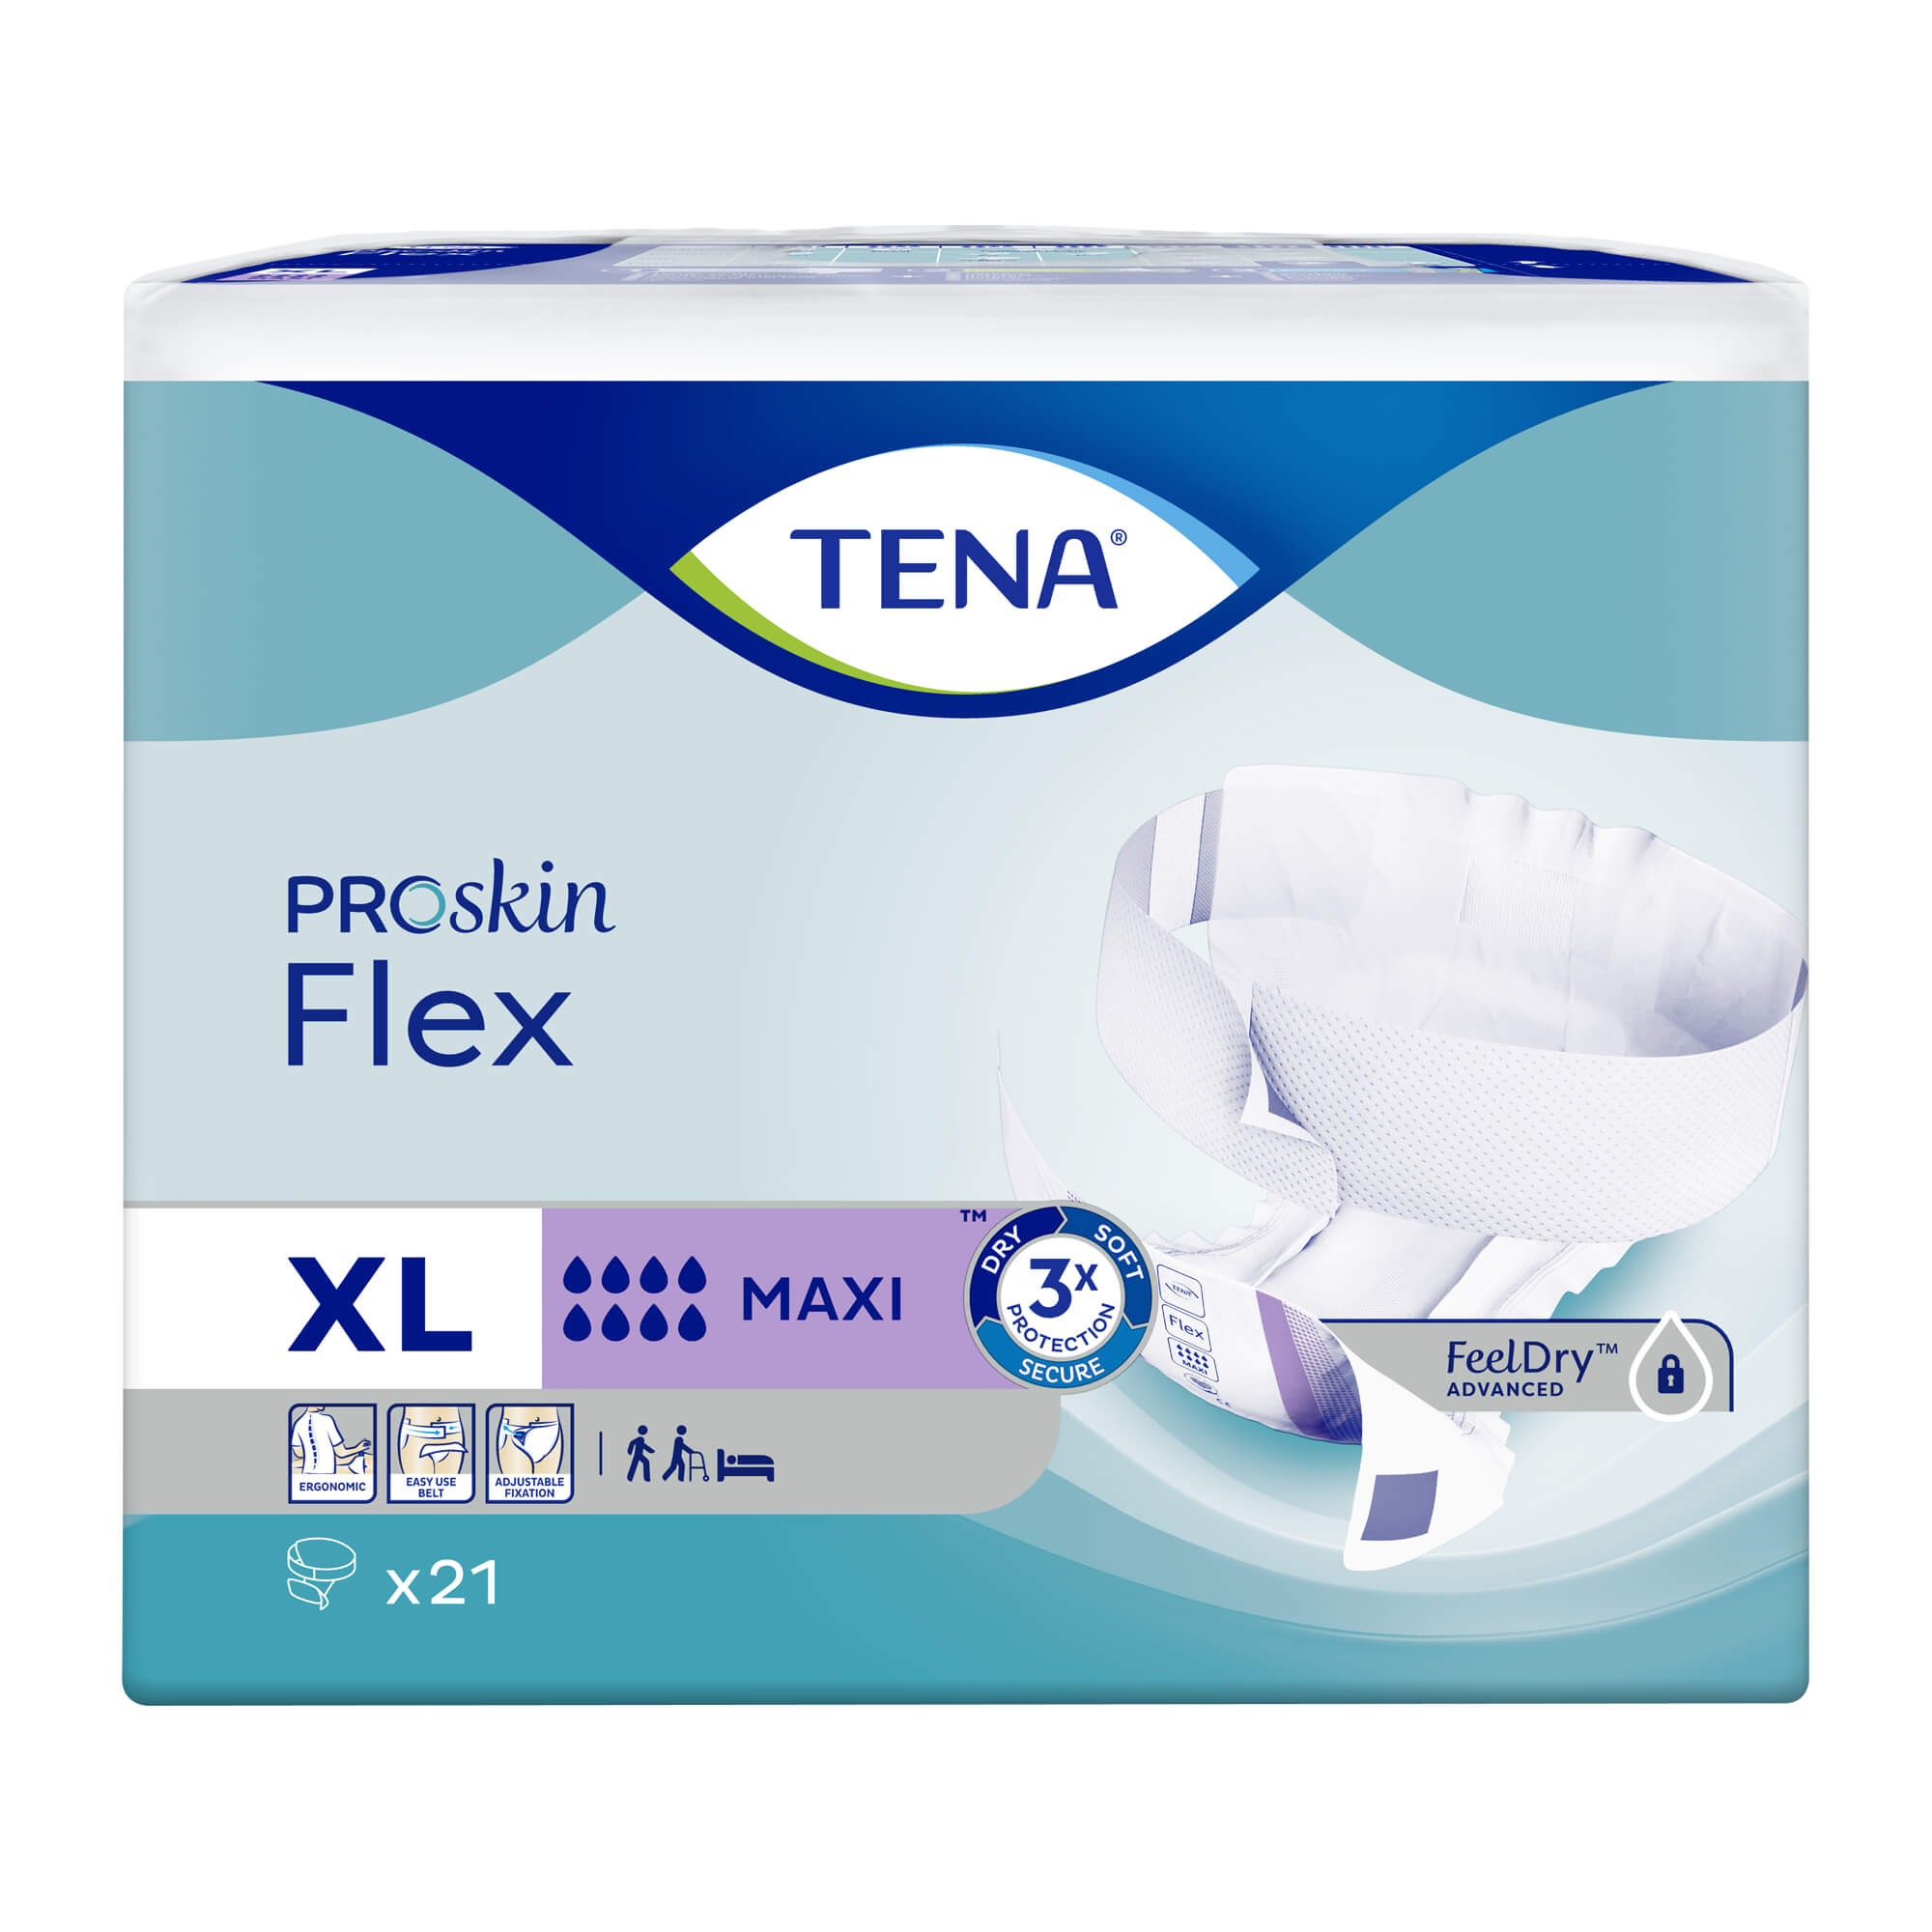 Flexible Inkontinenz-Vorlage mit Hüftbund für schwere bis sehr schwere Inkontinenz.